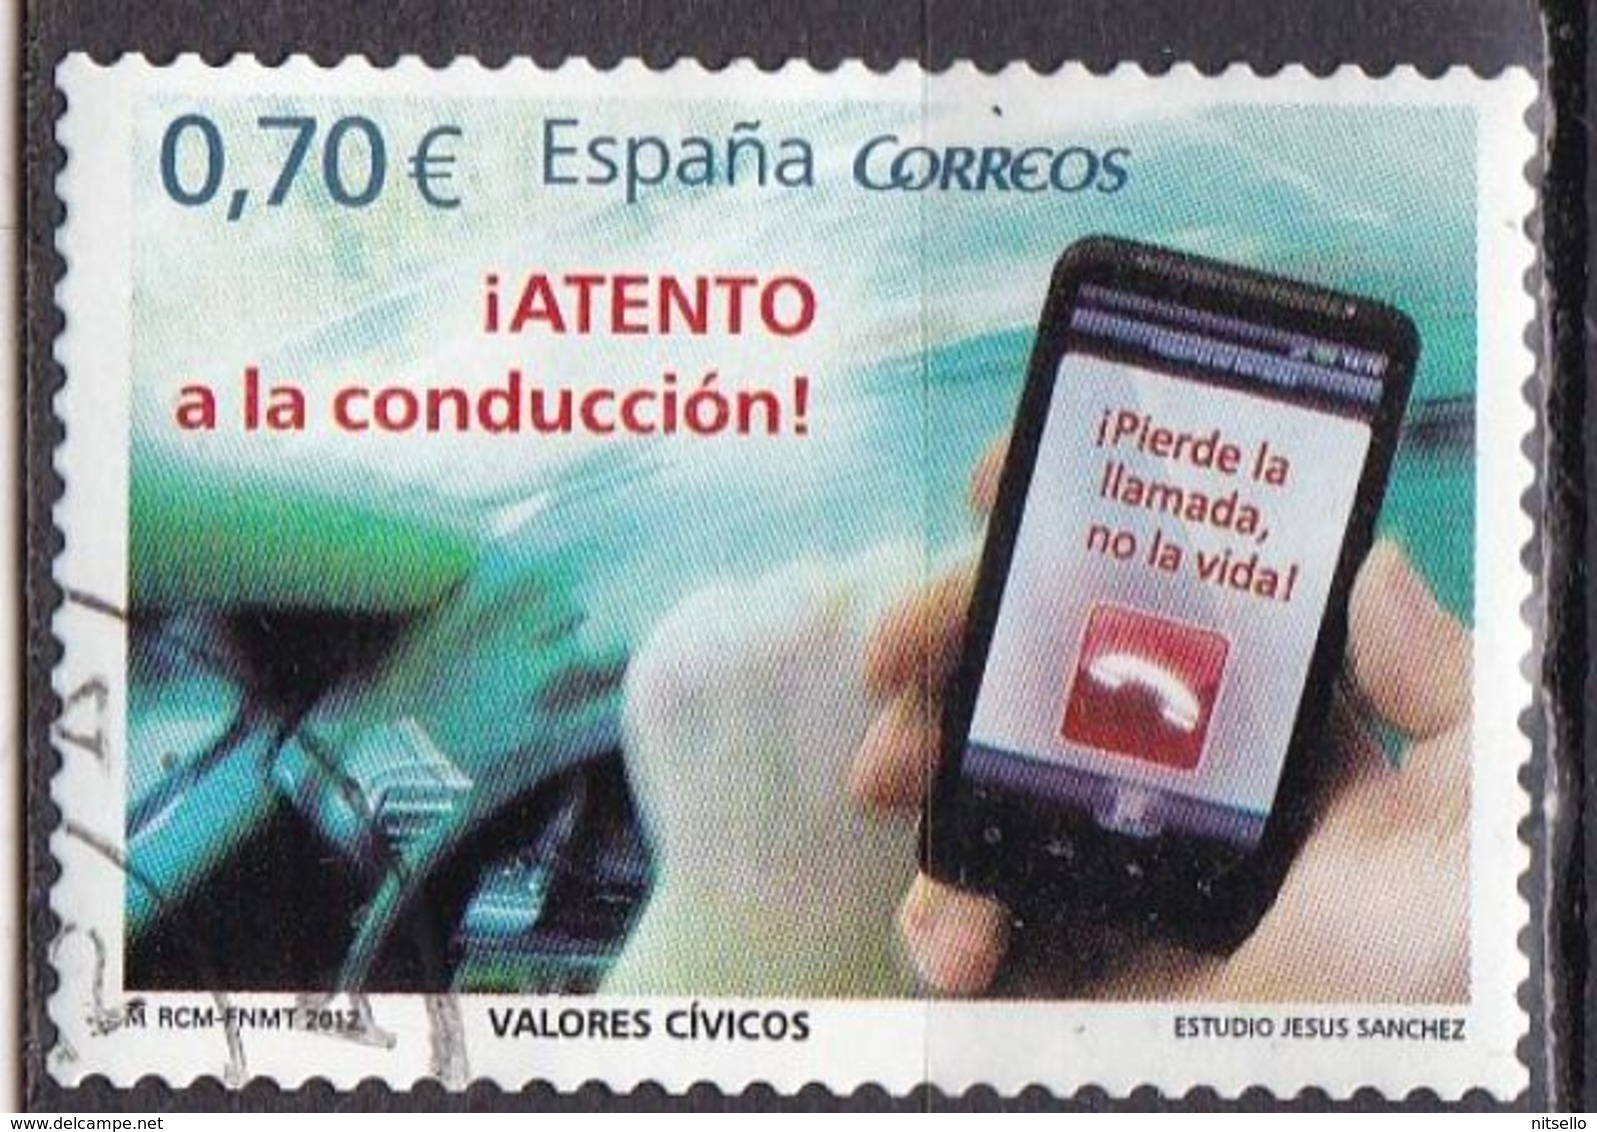 LOTE 1910  ///  (C020) ESPAÑA 2012    YVERT Nº: 4375 - Used Stamps